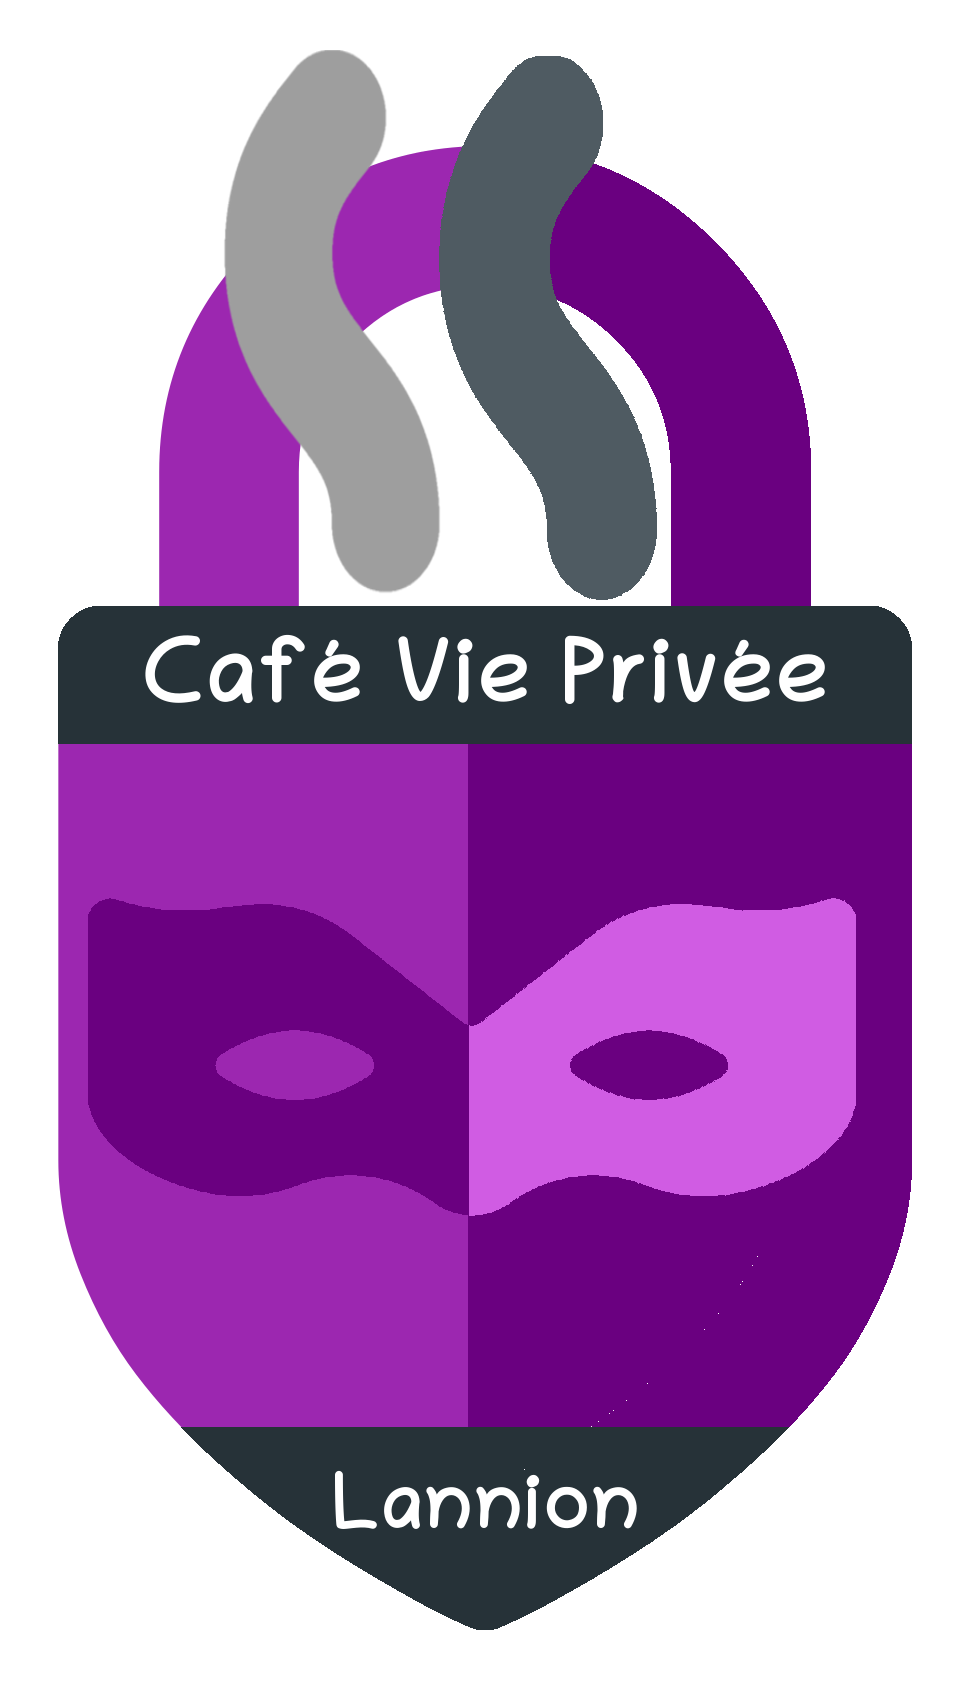 Café Vie Privée Lannion / Kafe buhez prevez Lannuon